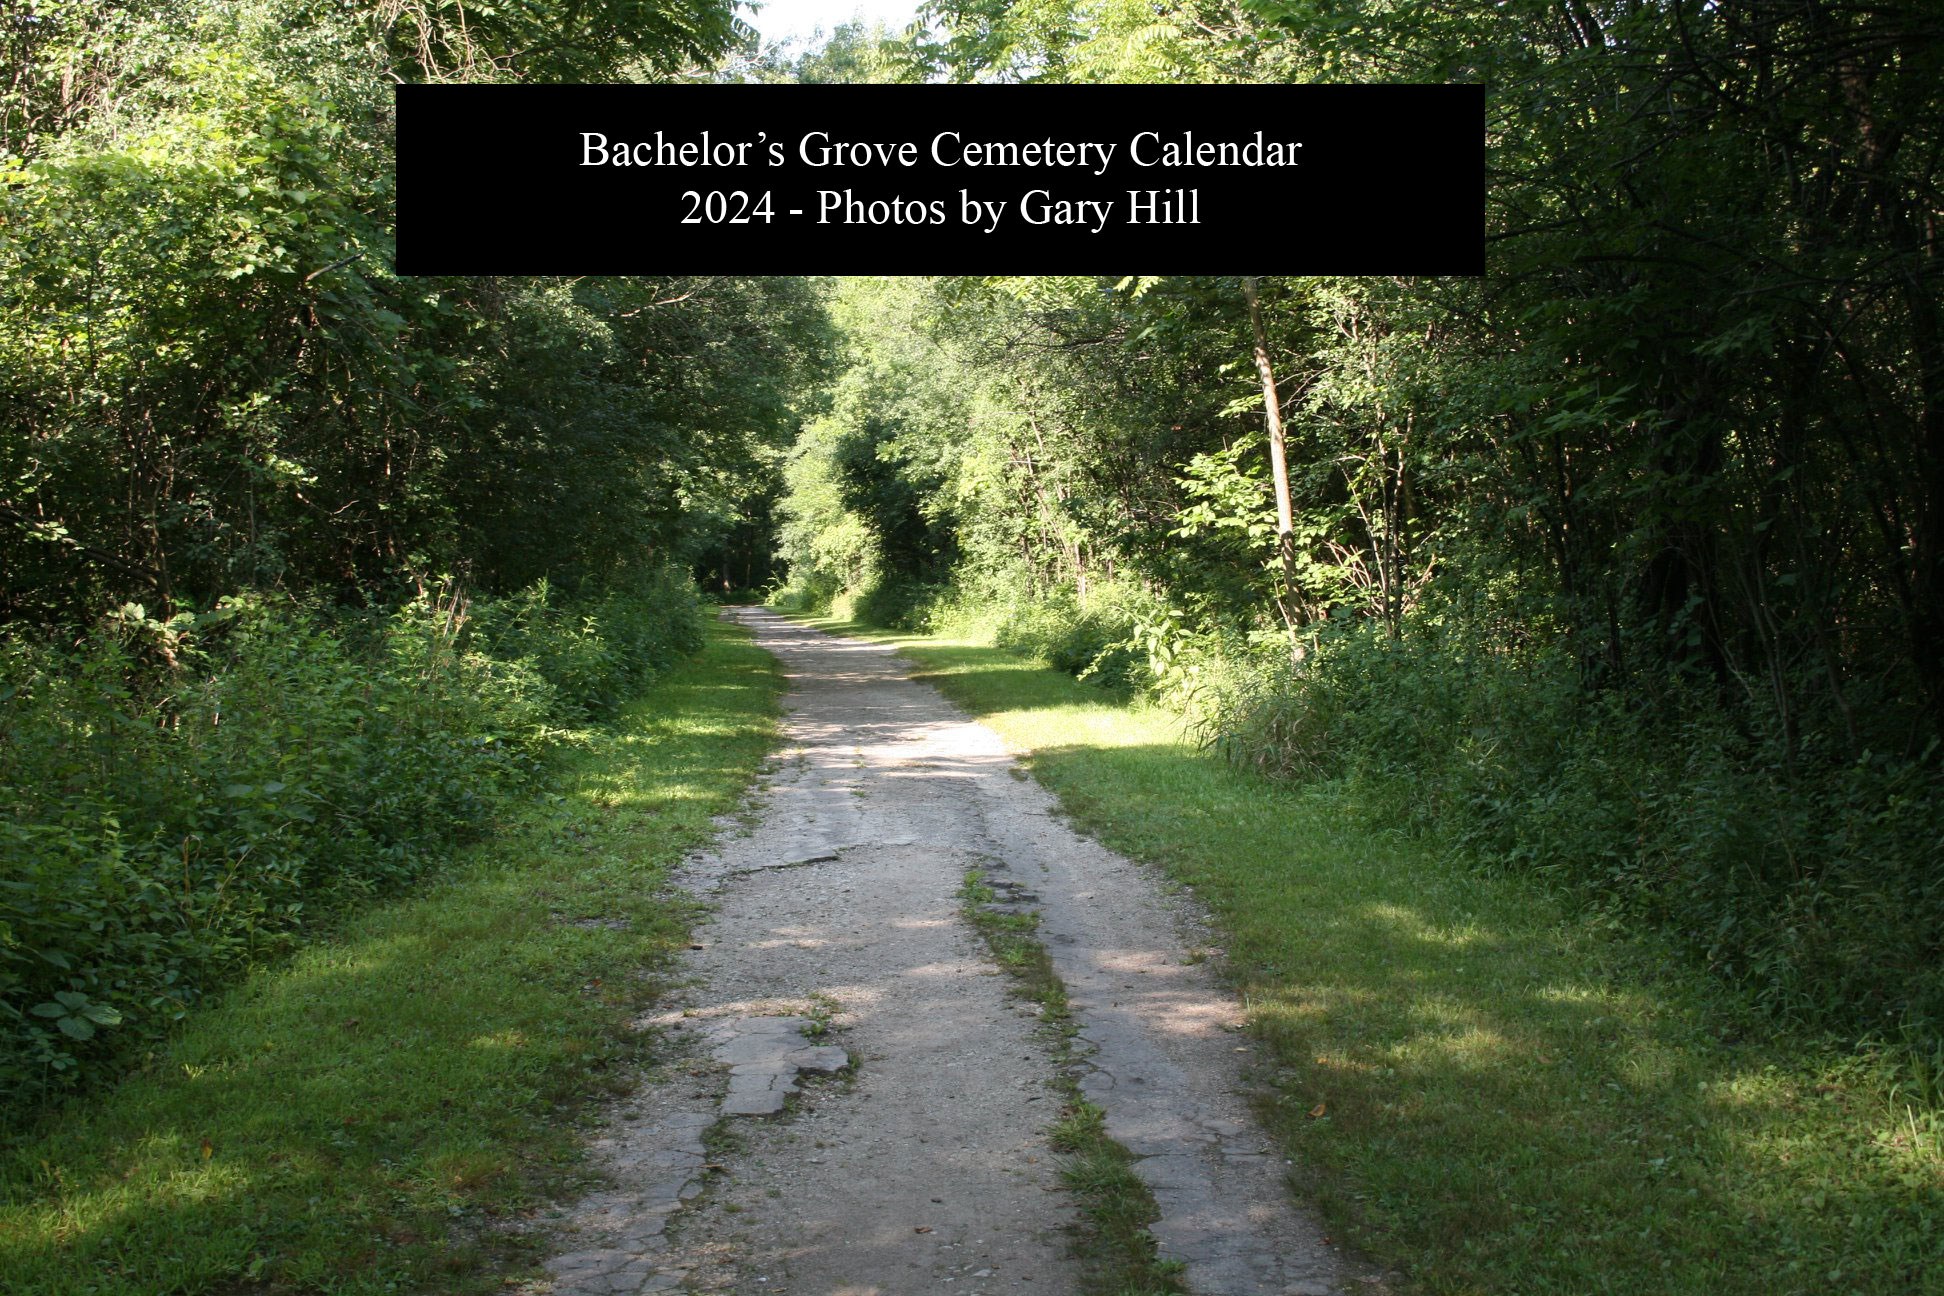 Bachelor's Grove Cemetery 2024 Calendar